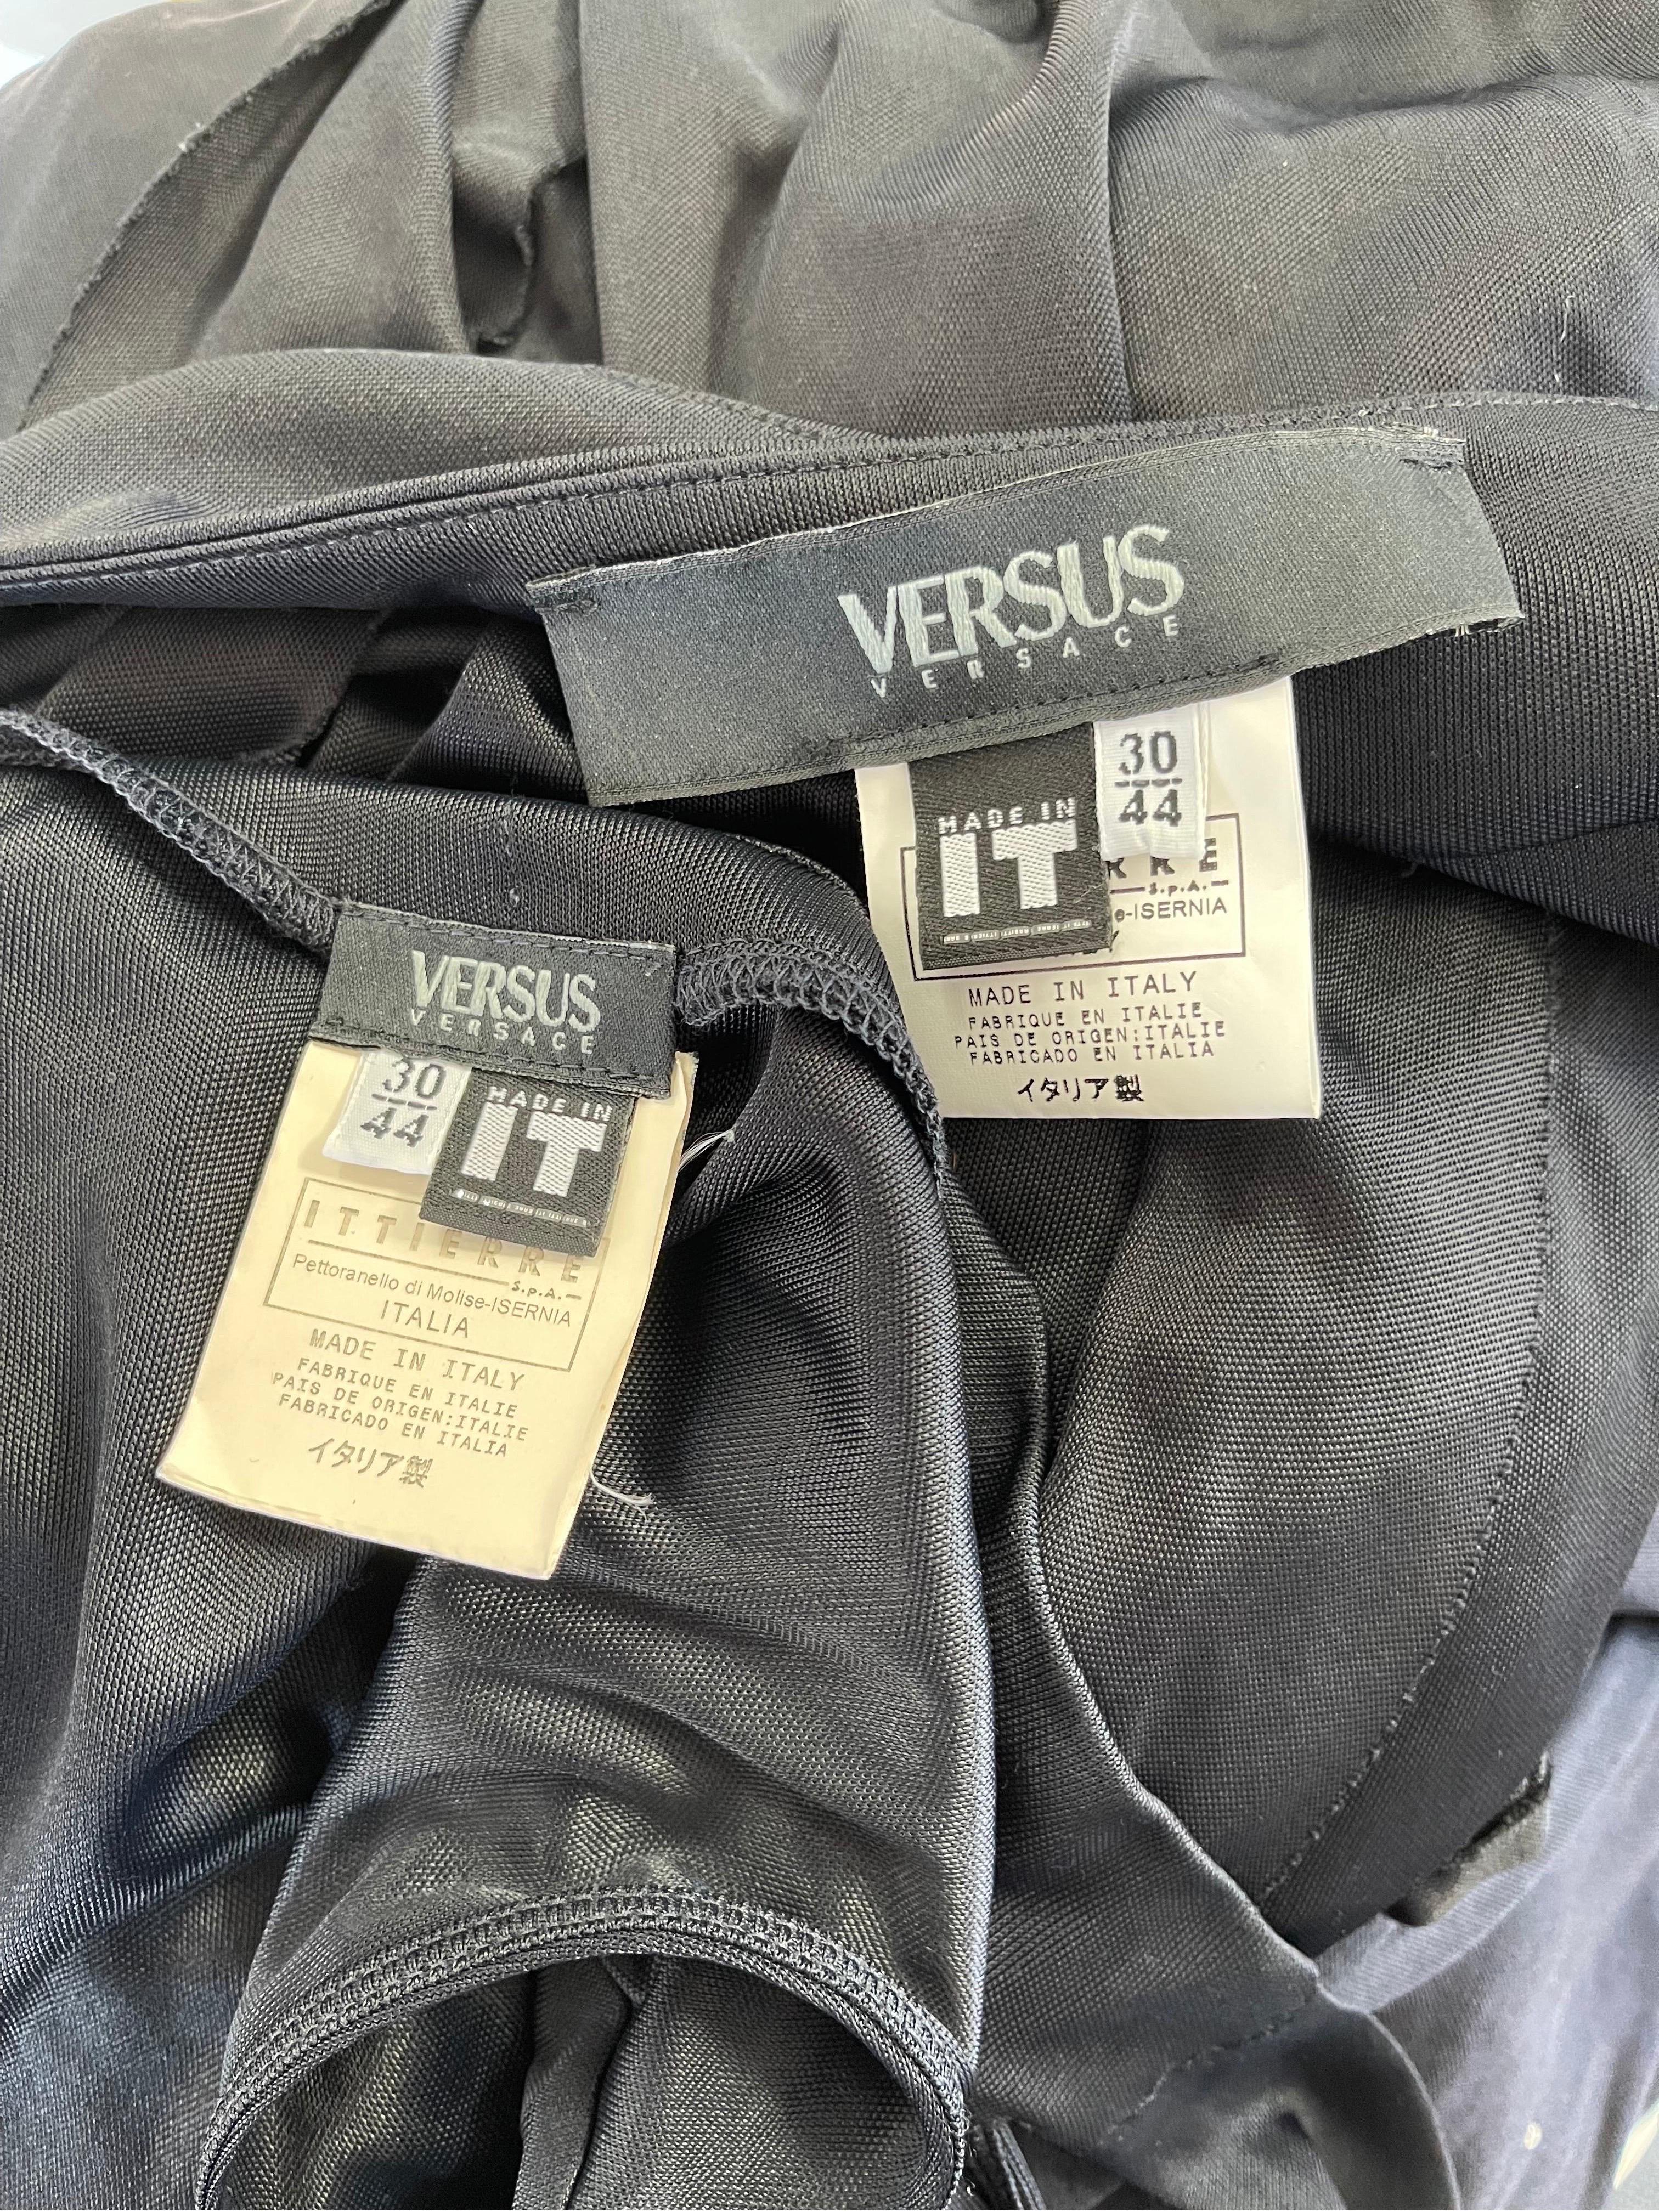 Noir Gianni Versace - Ensemble robe et jupe bondage en jersey noir Versus, taille 8/10, années 2000 en vente